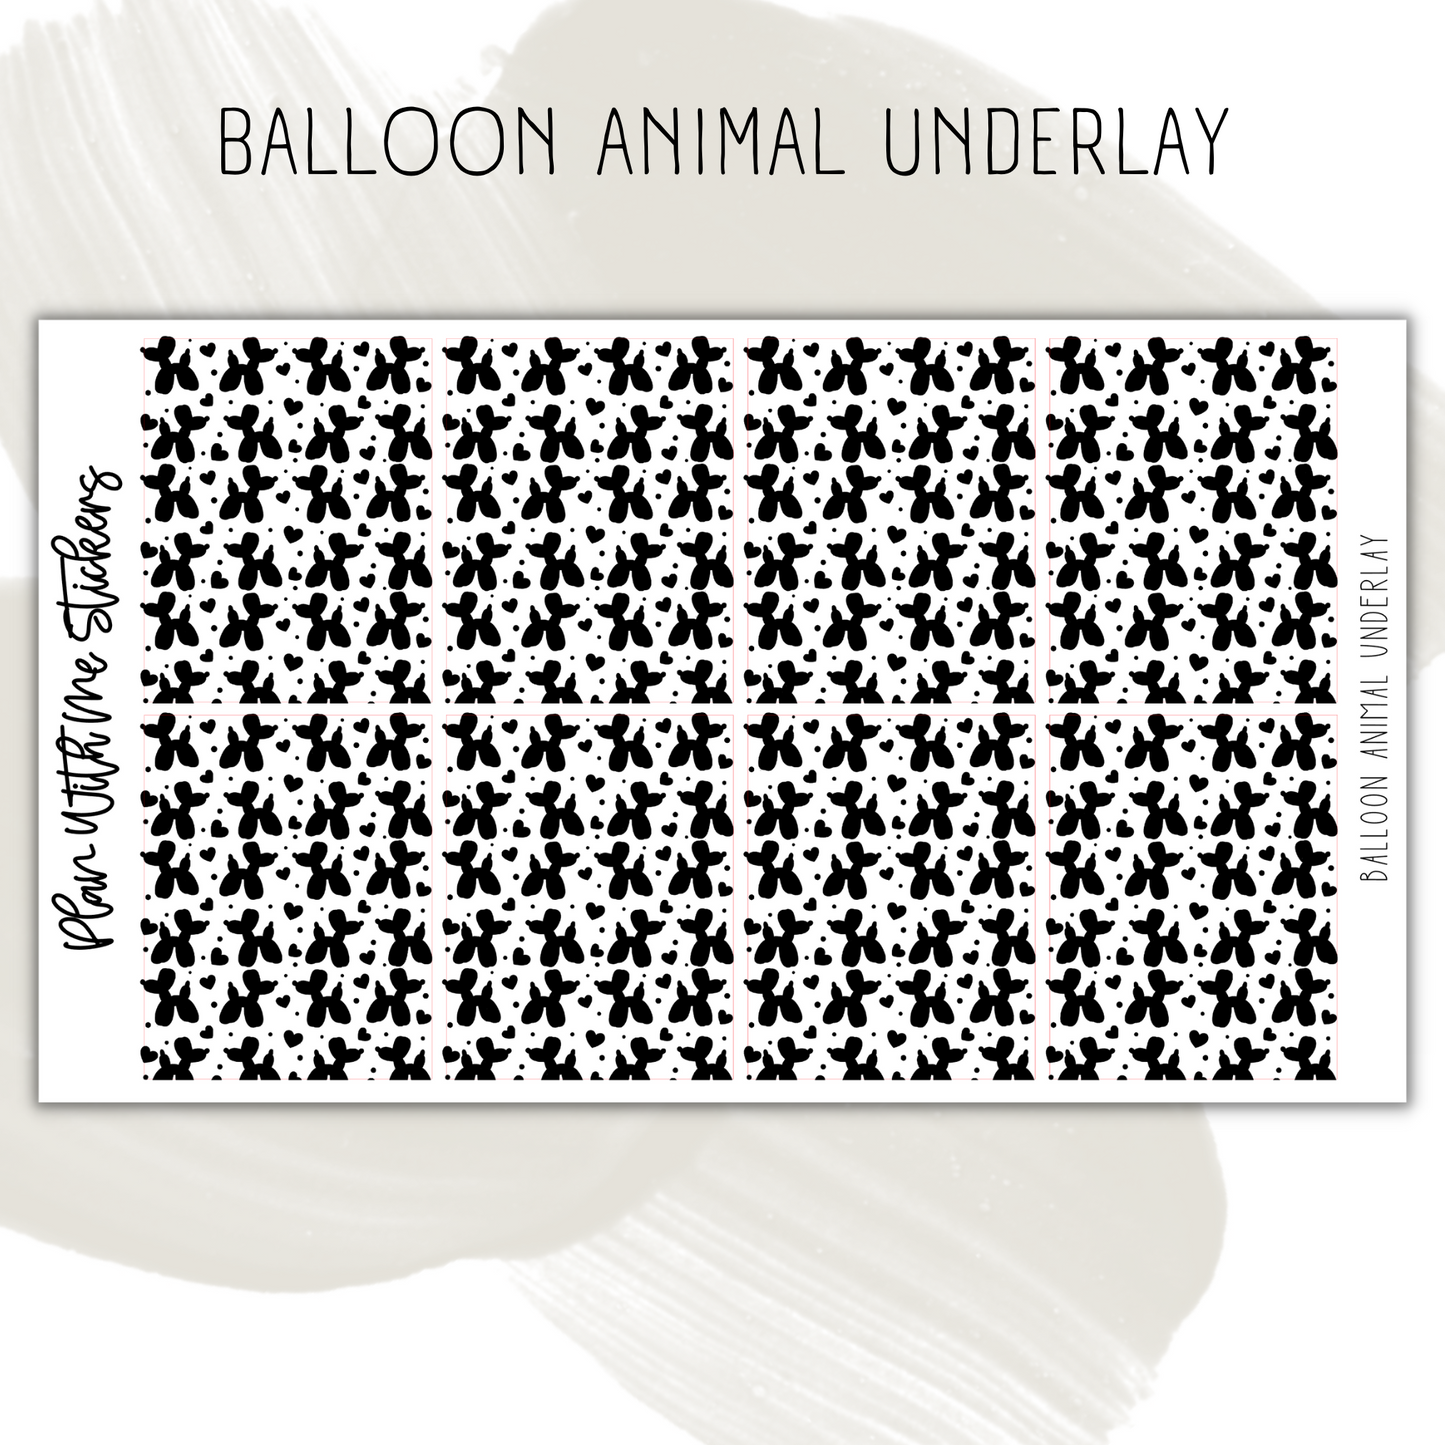 Balloon Animal Underlay